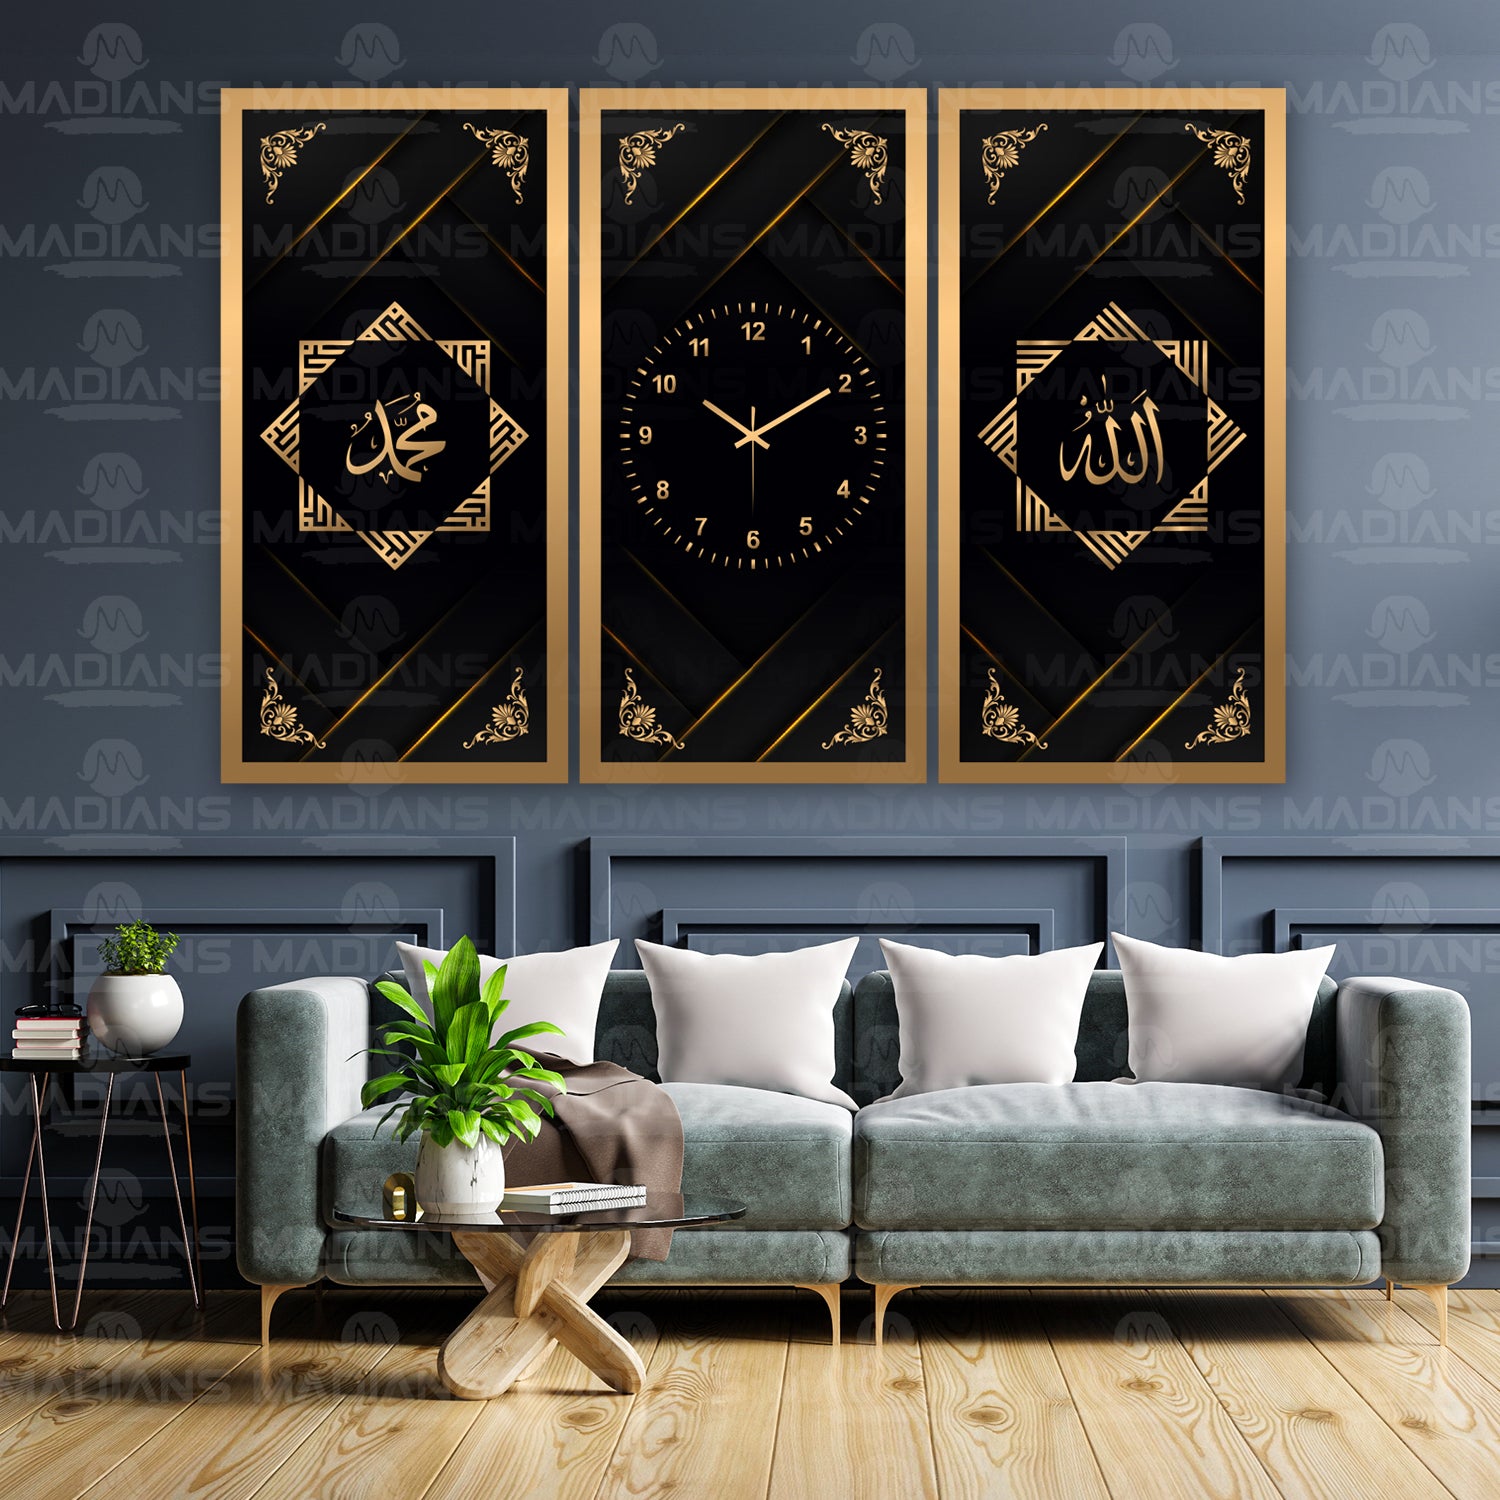 Allah - Muhammad - Golden - 3 Panel Wall Clock